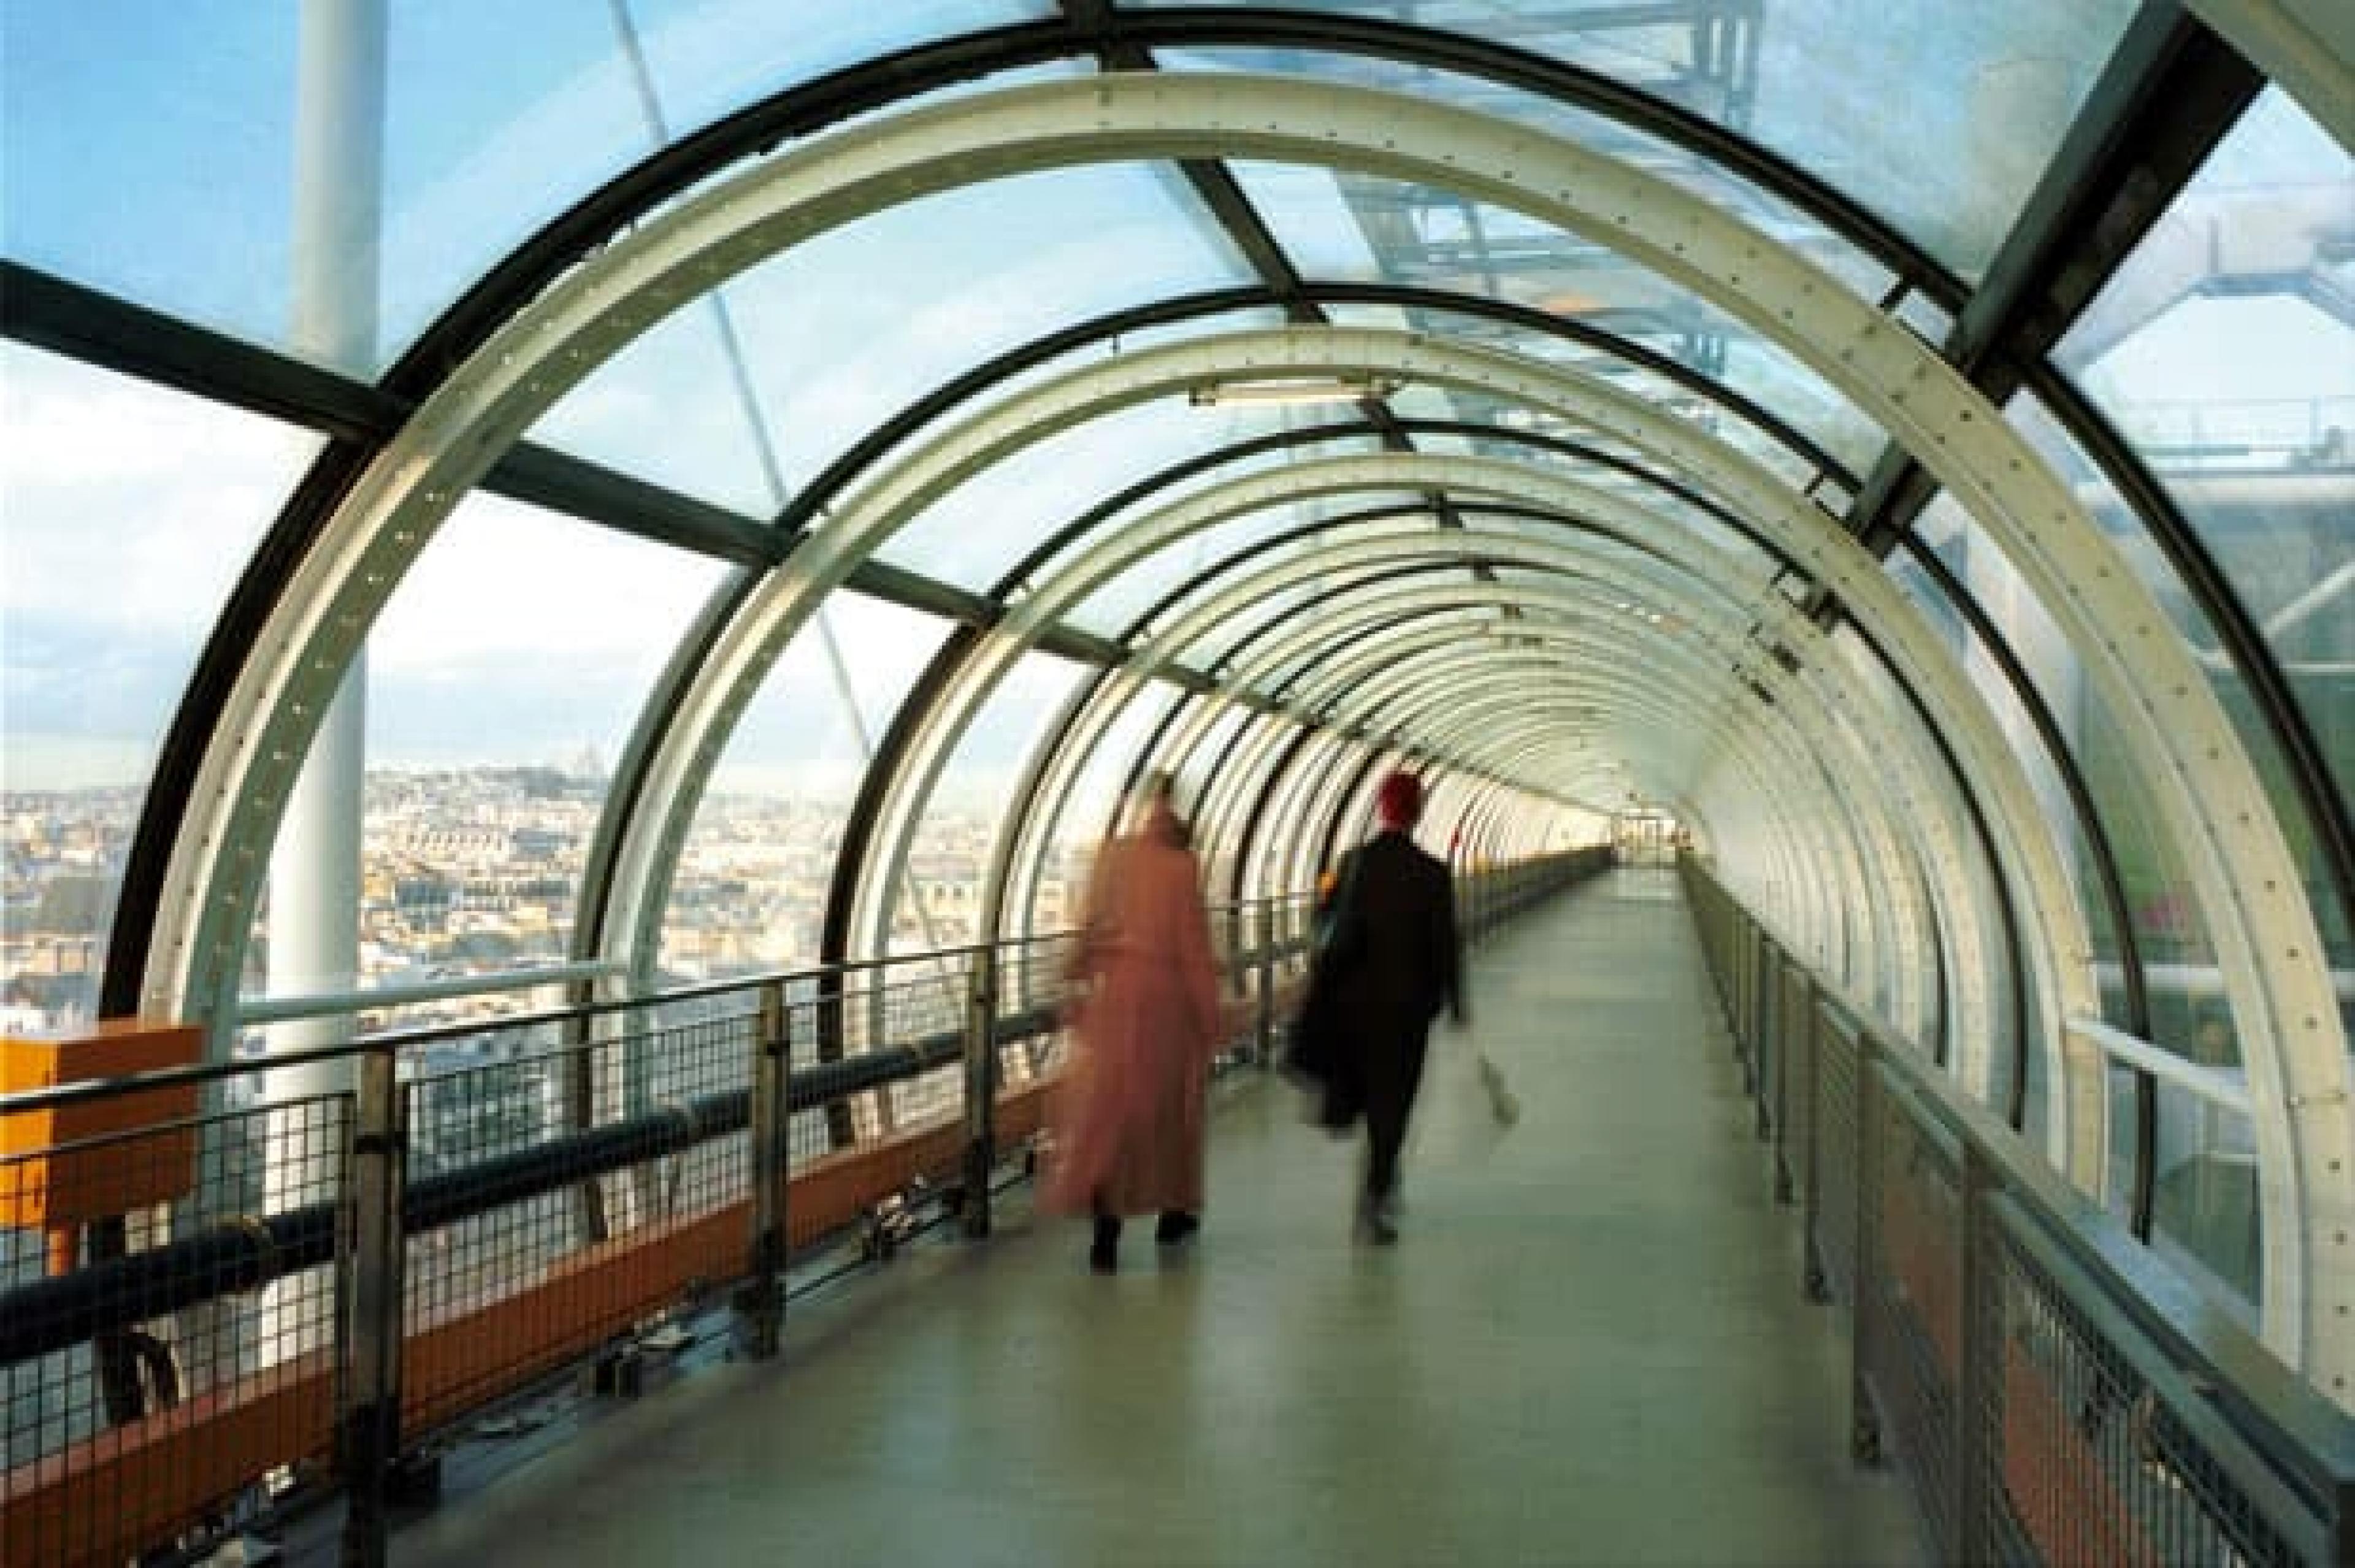 Pompidou center corridor in Paris France